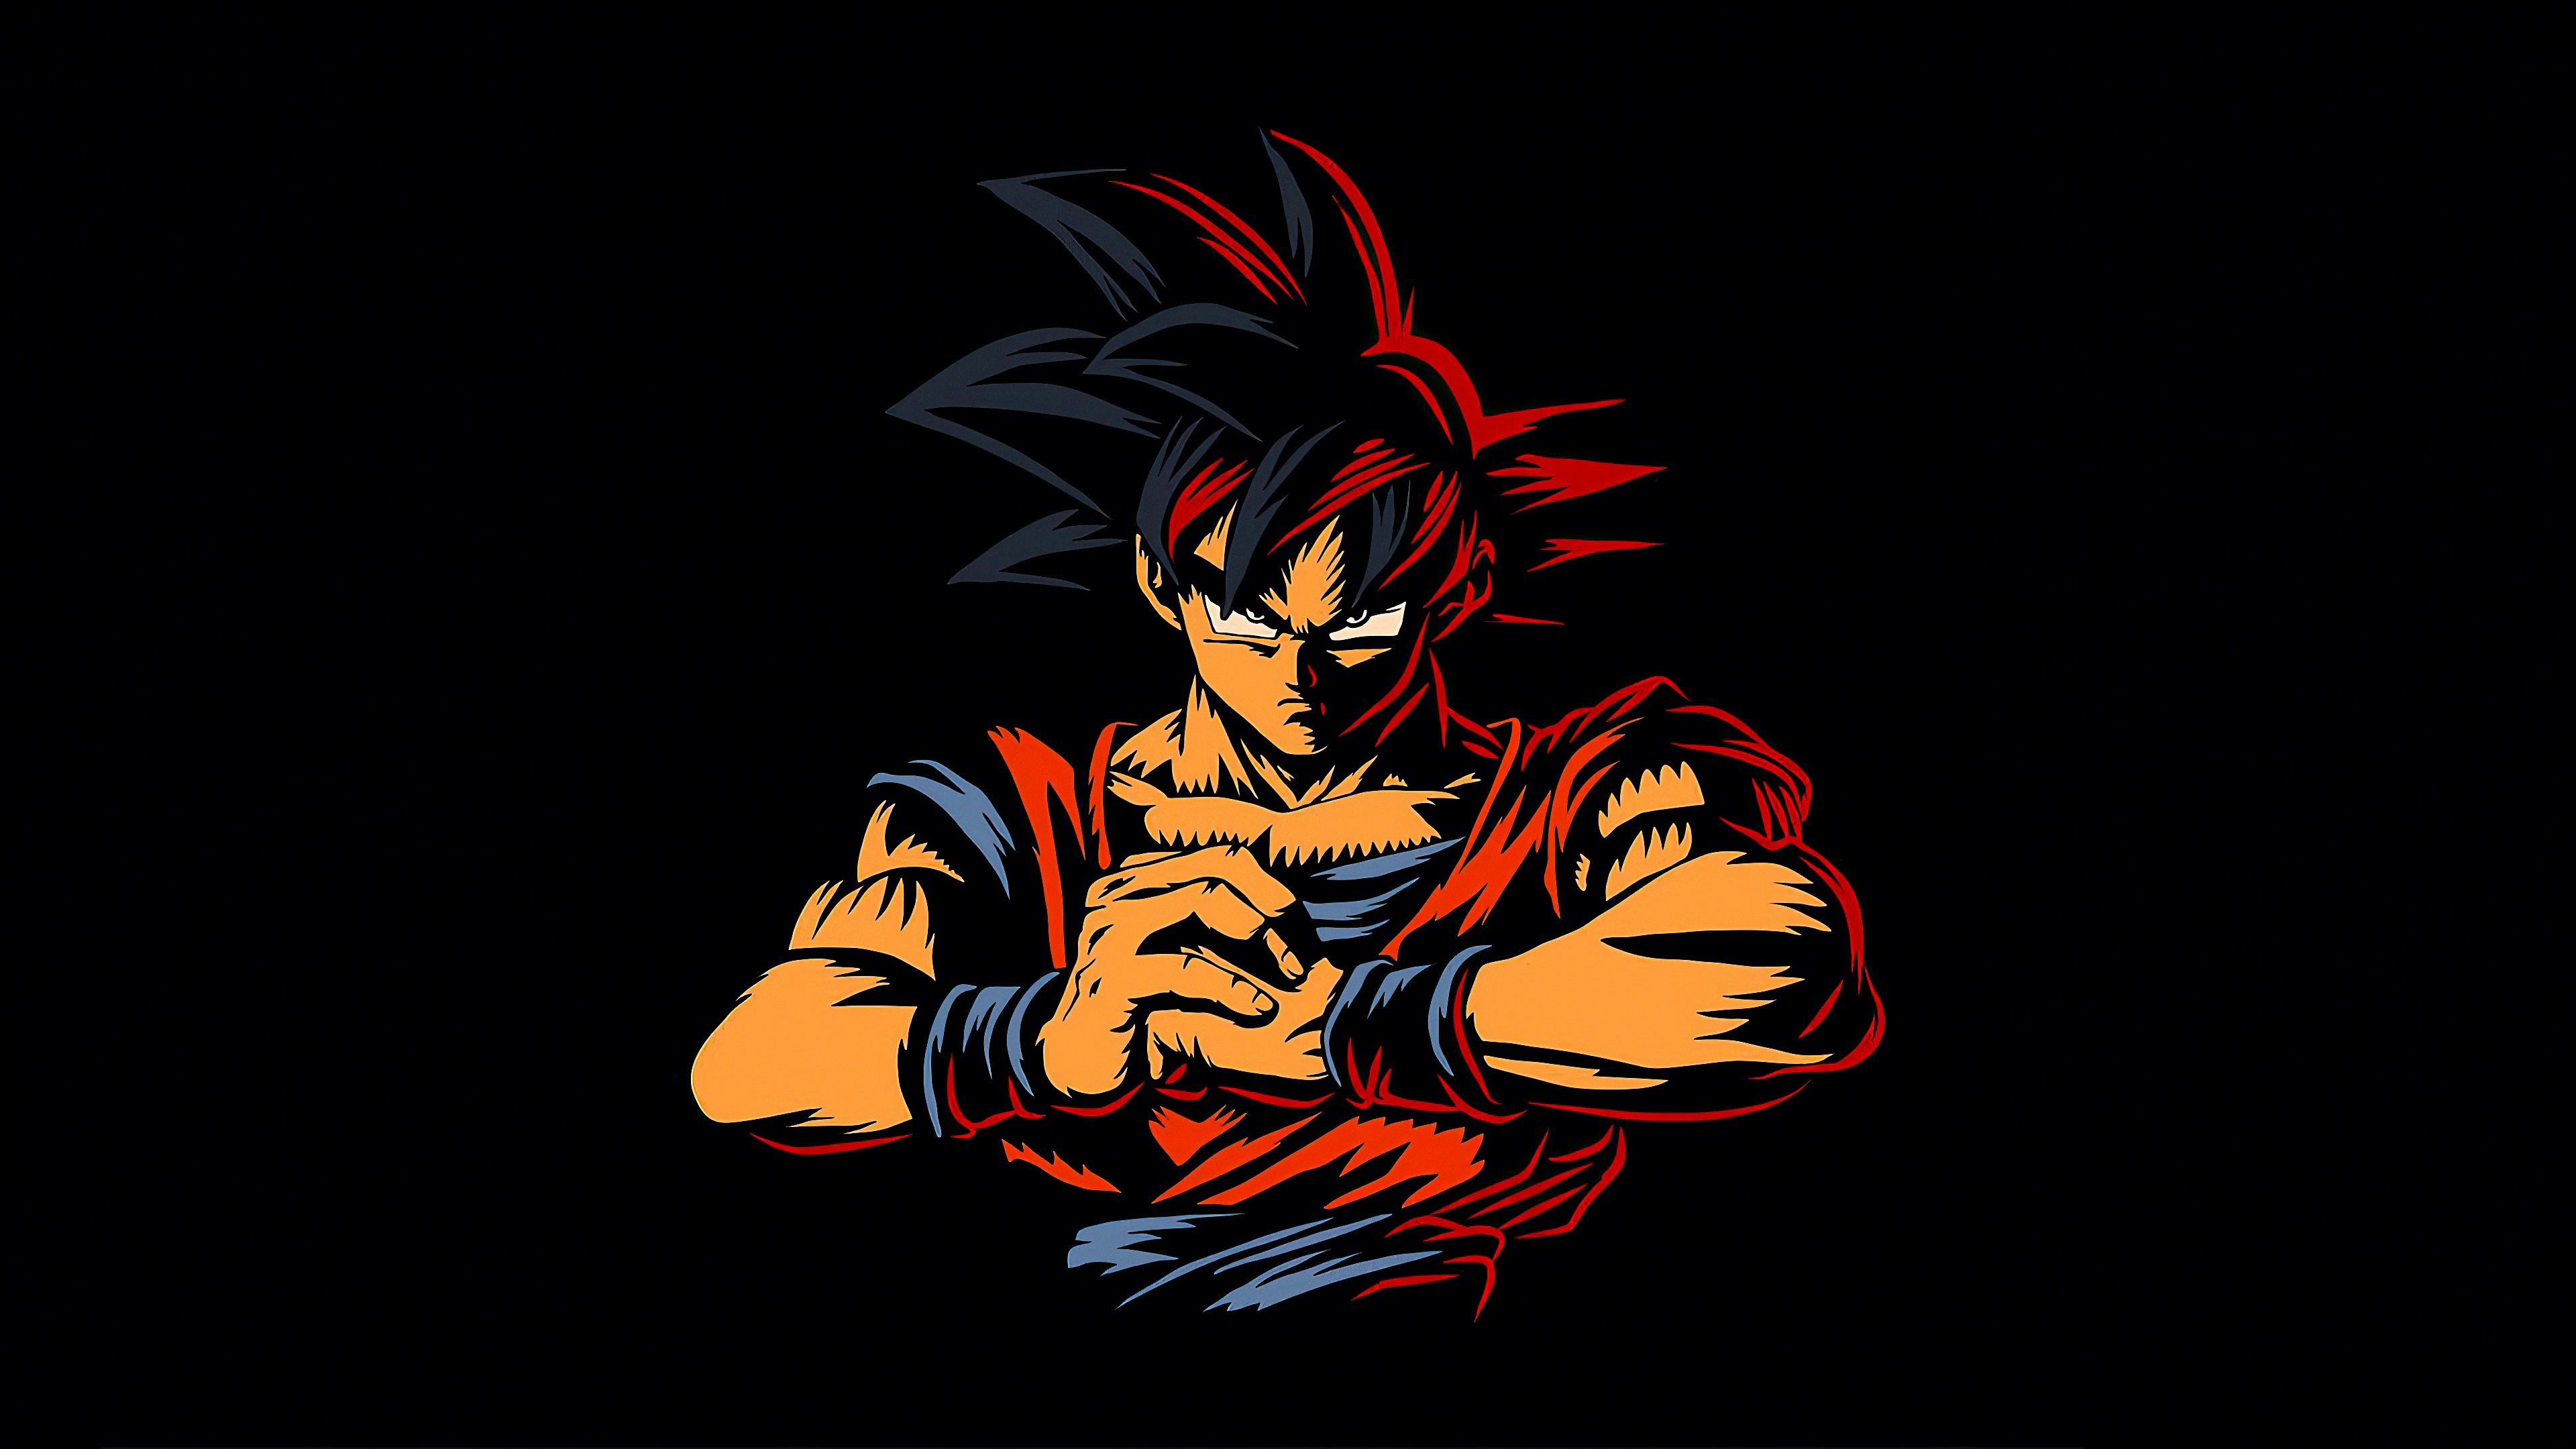 Fondos de pantalla Goku from Dragon Ball